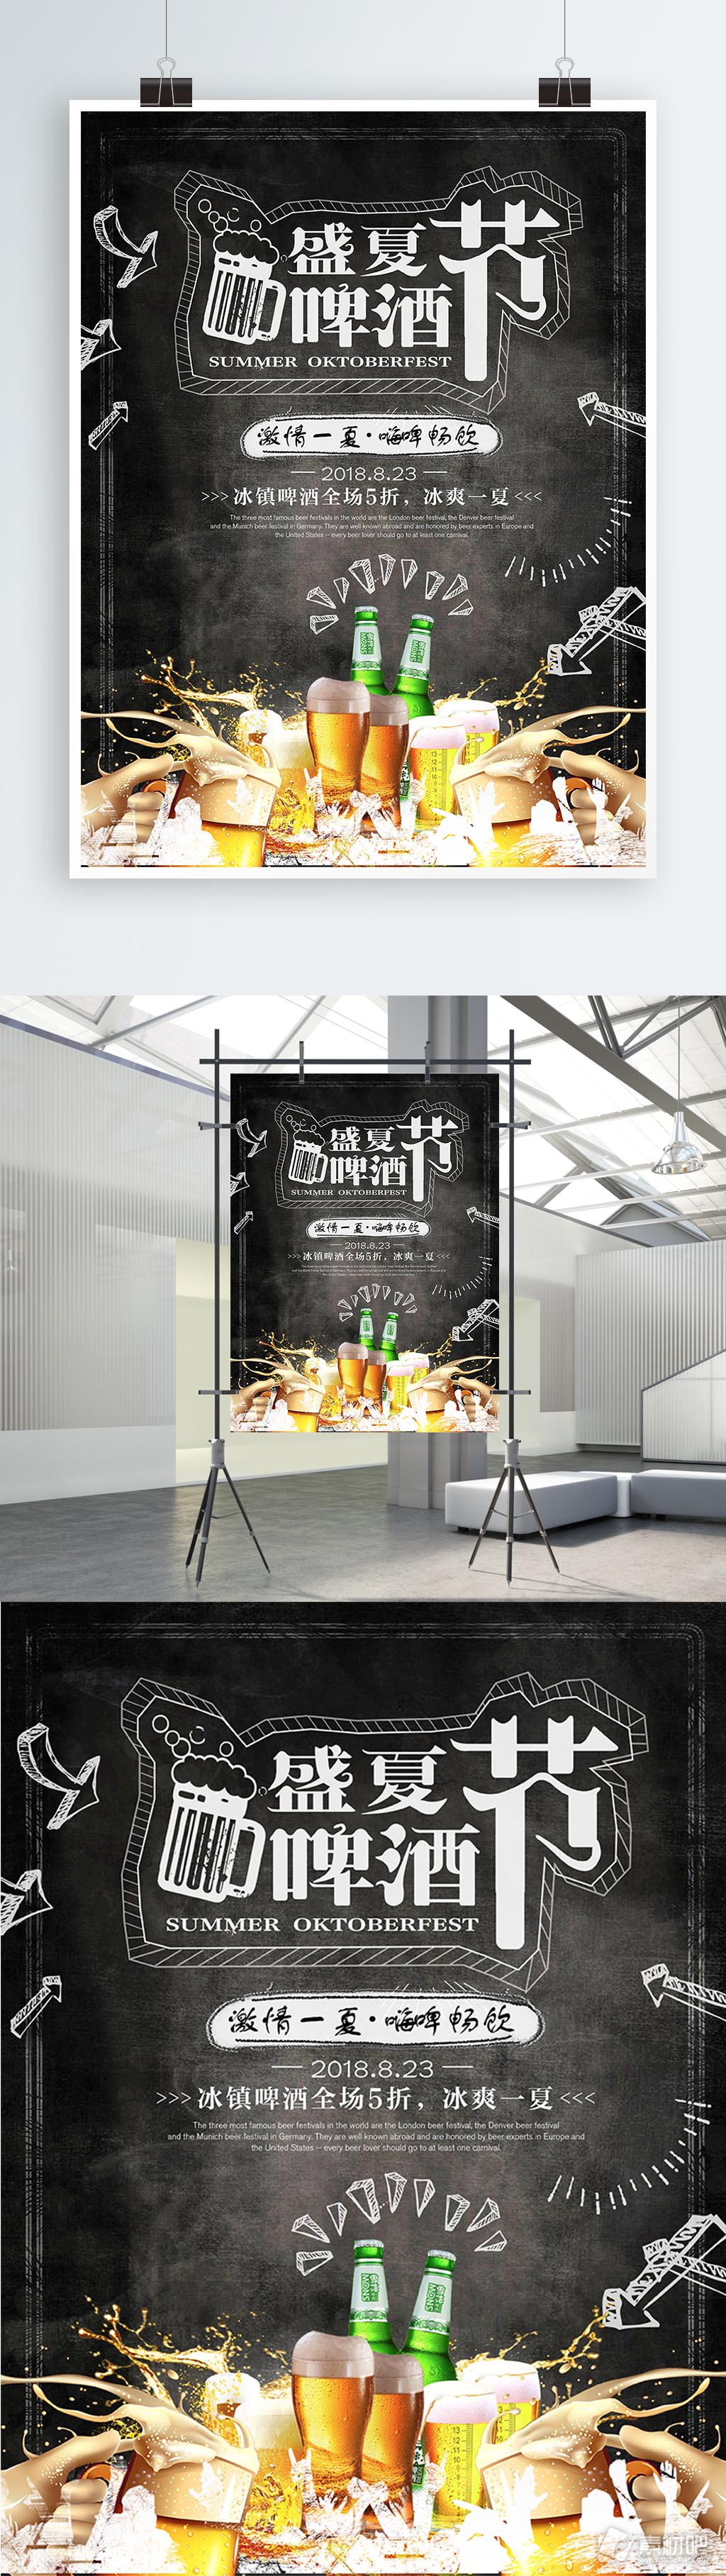 创意黑板盛夏啤酒节促销海报设计